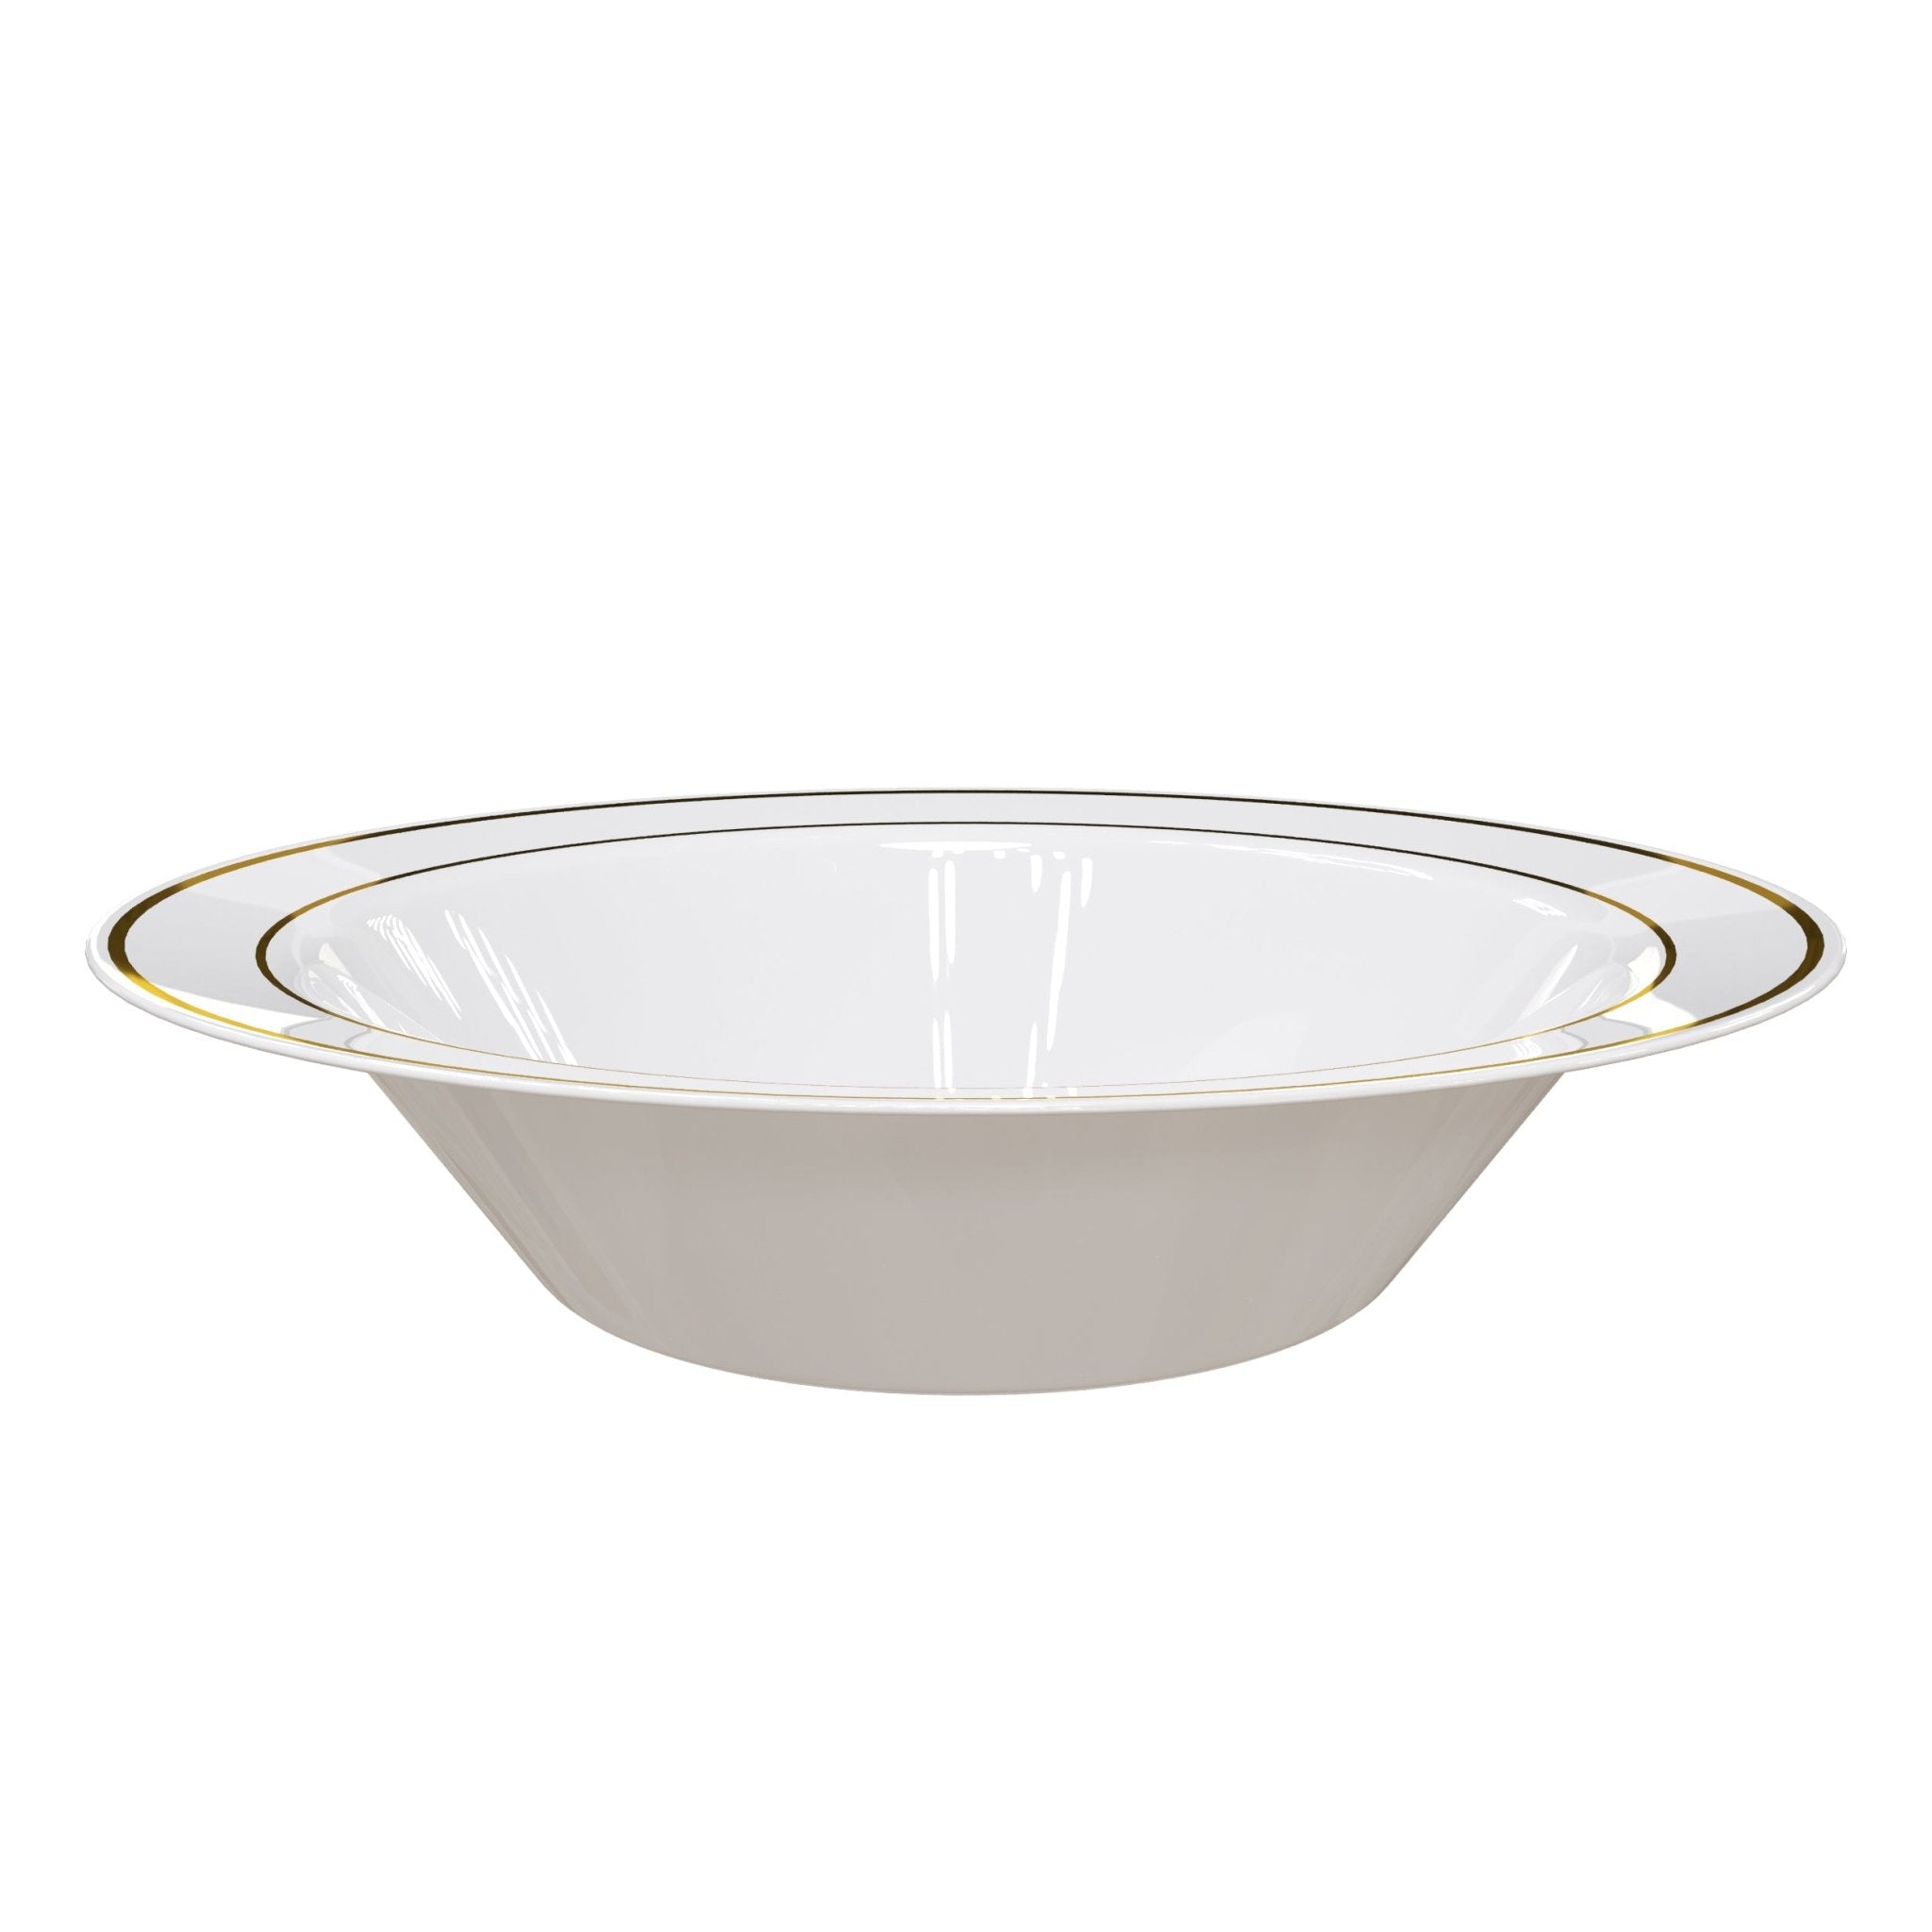 14 oz. Gold Line Design Plastic Bowls (120 Count)